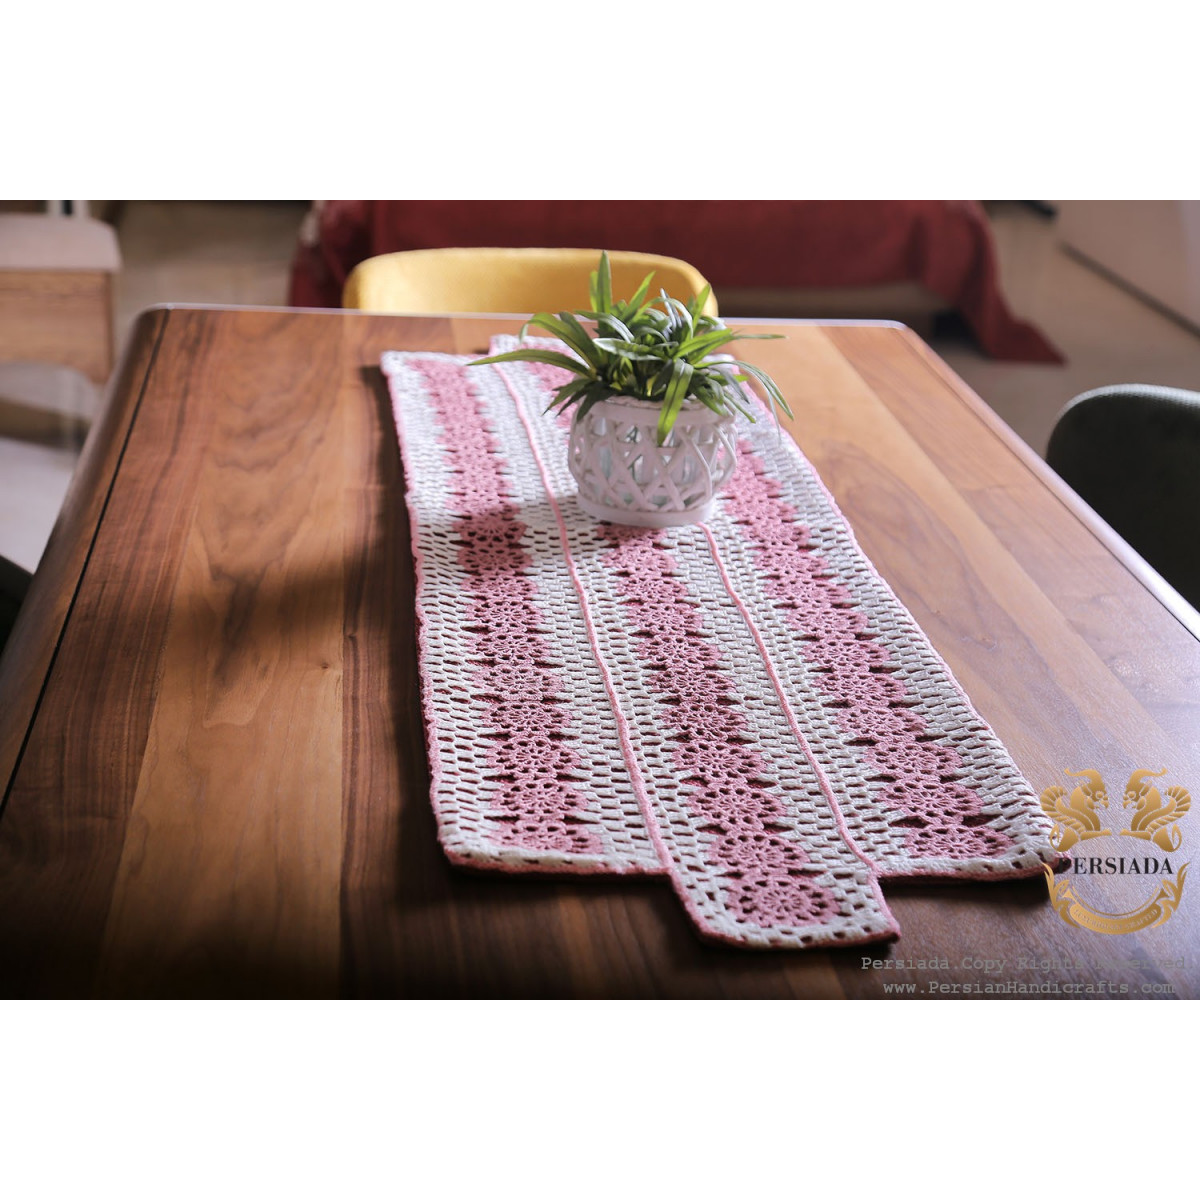 Tablecloth Bedspread Set | Macrame Knotting | HBS1003-Persiada Persian Handicrafts